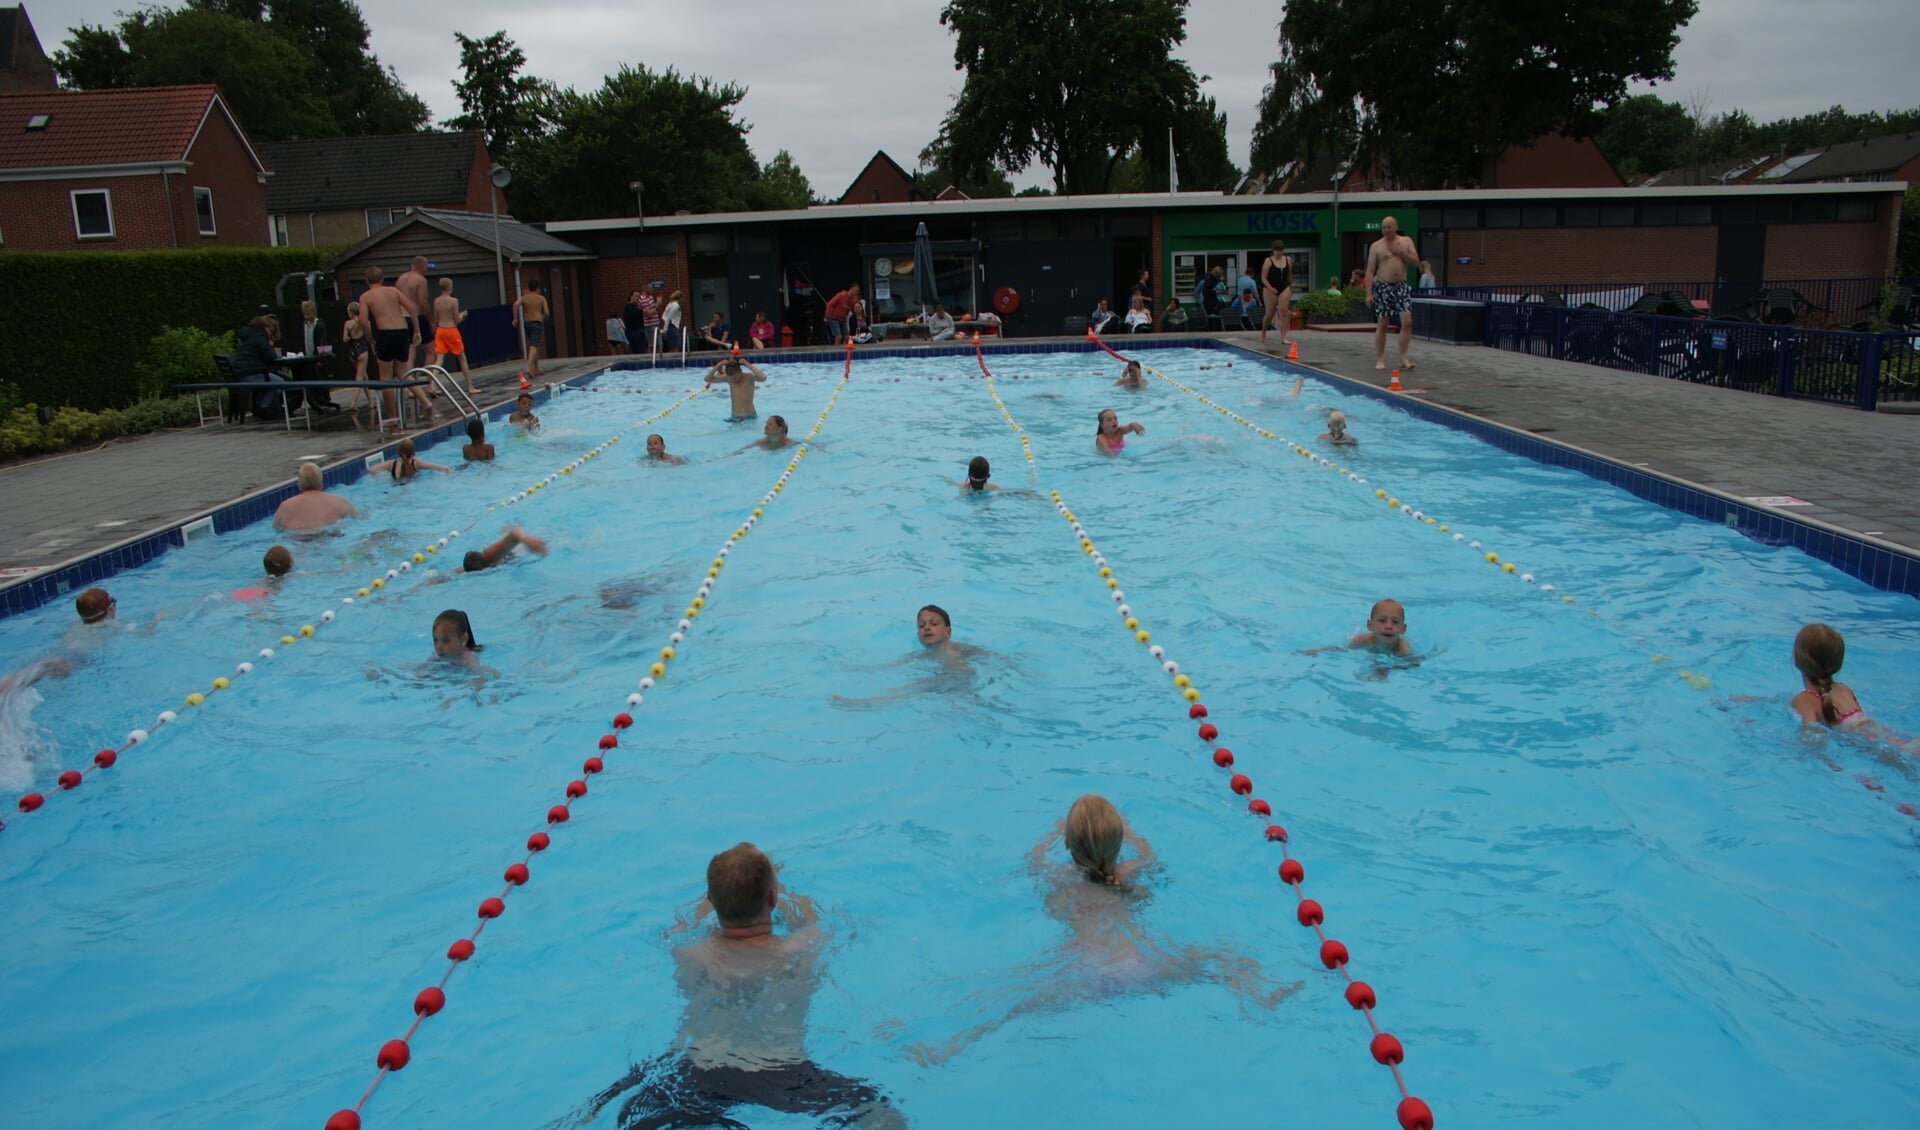 In zwembad De Tobbe wordt dit jaar weer een zwemvierdaagse gehouden. (foto Ivonne Croeze)